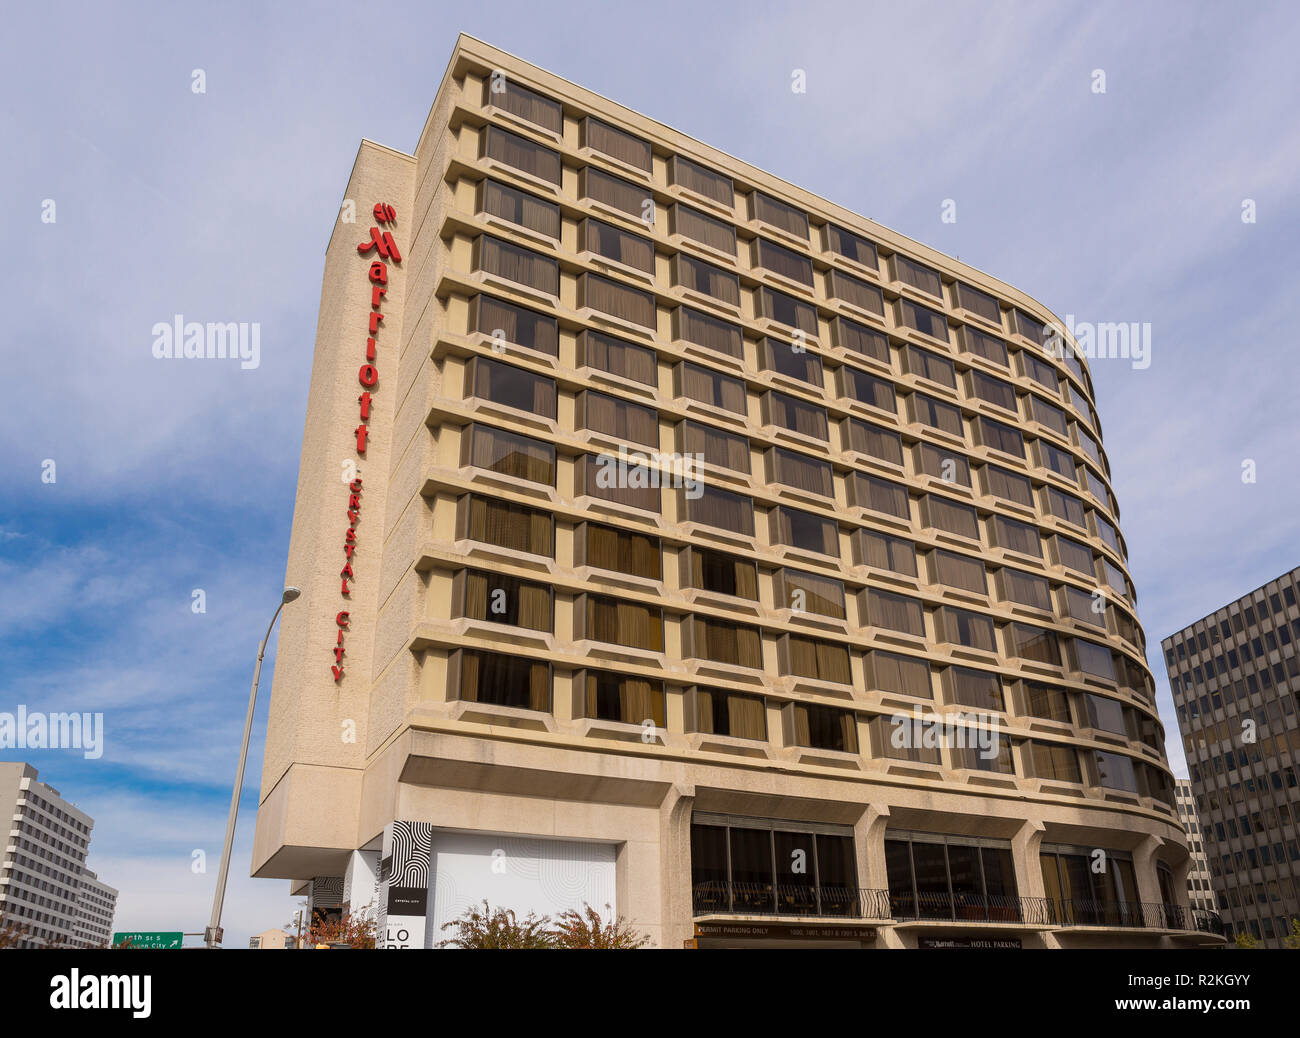 CRYSTAL CITY, Virginia, EE.UU. - El Marriott Hotel en Crystal City, ubicación de Amazon HQ2 en el Condado de Arlington. Foto de stock